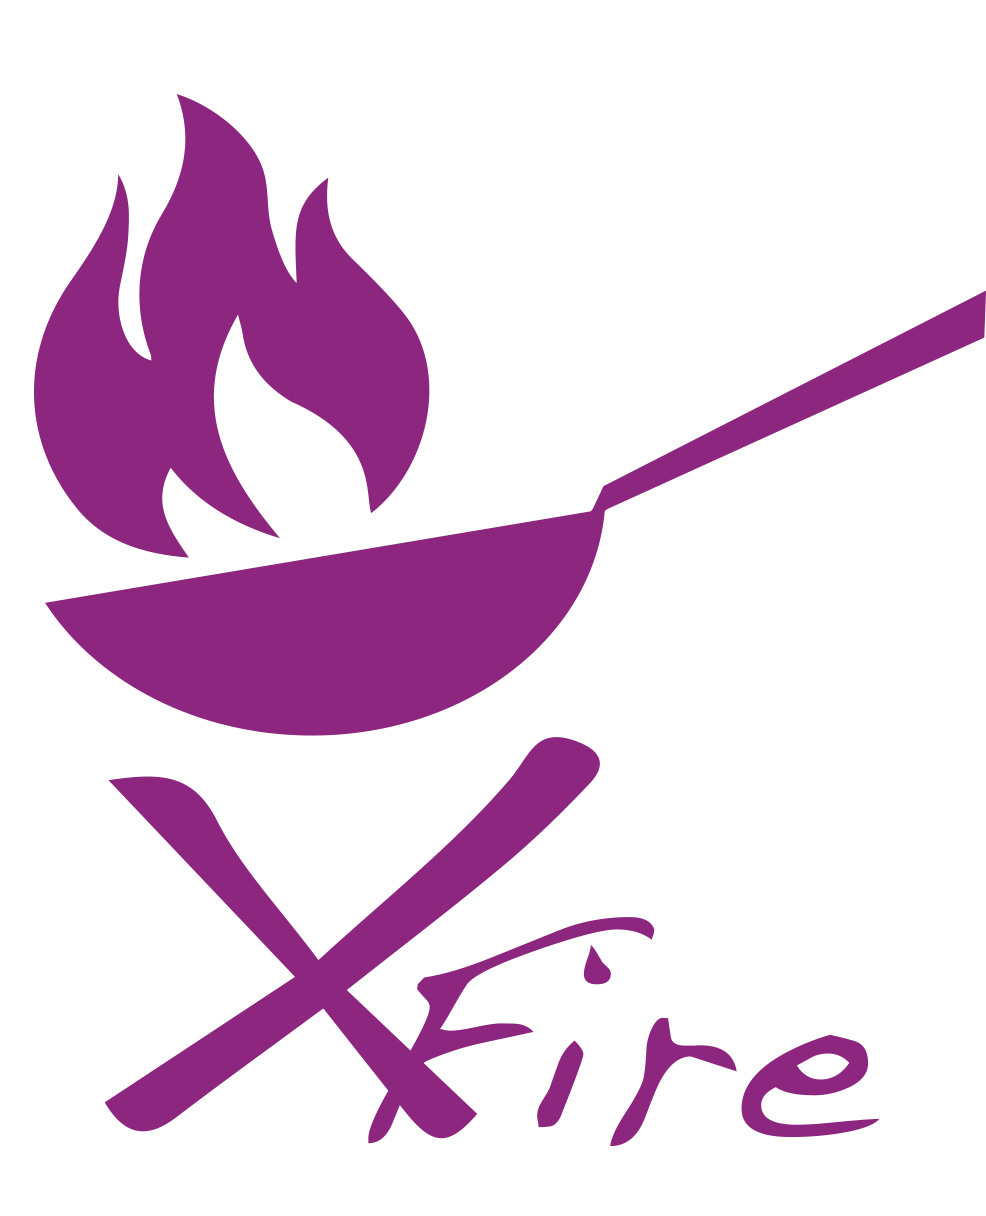 Xfire